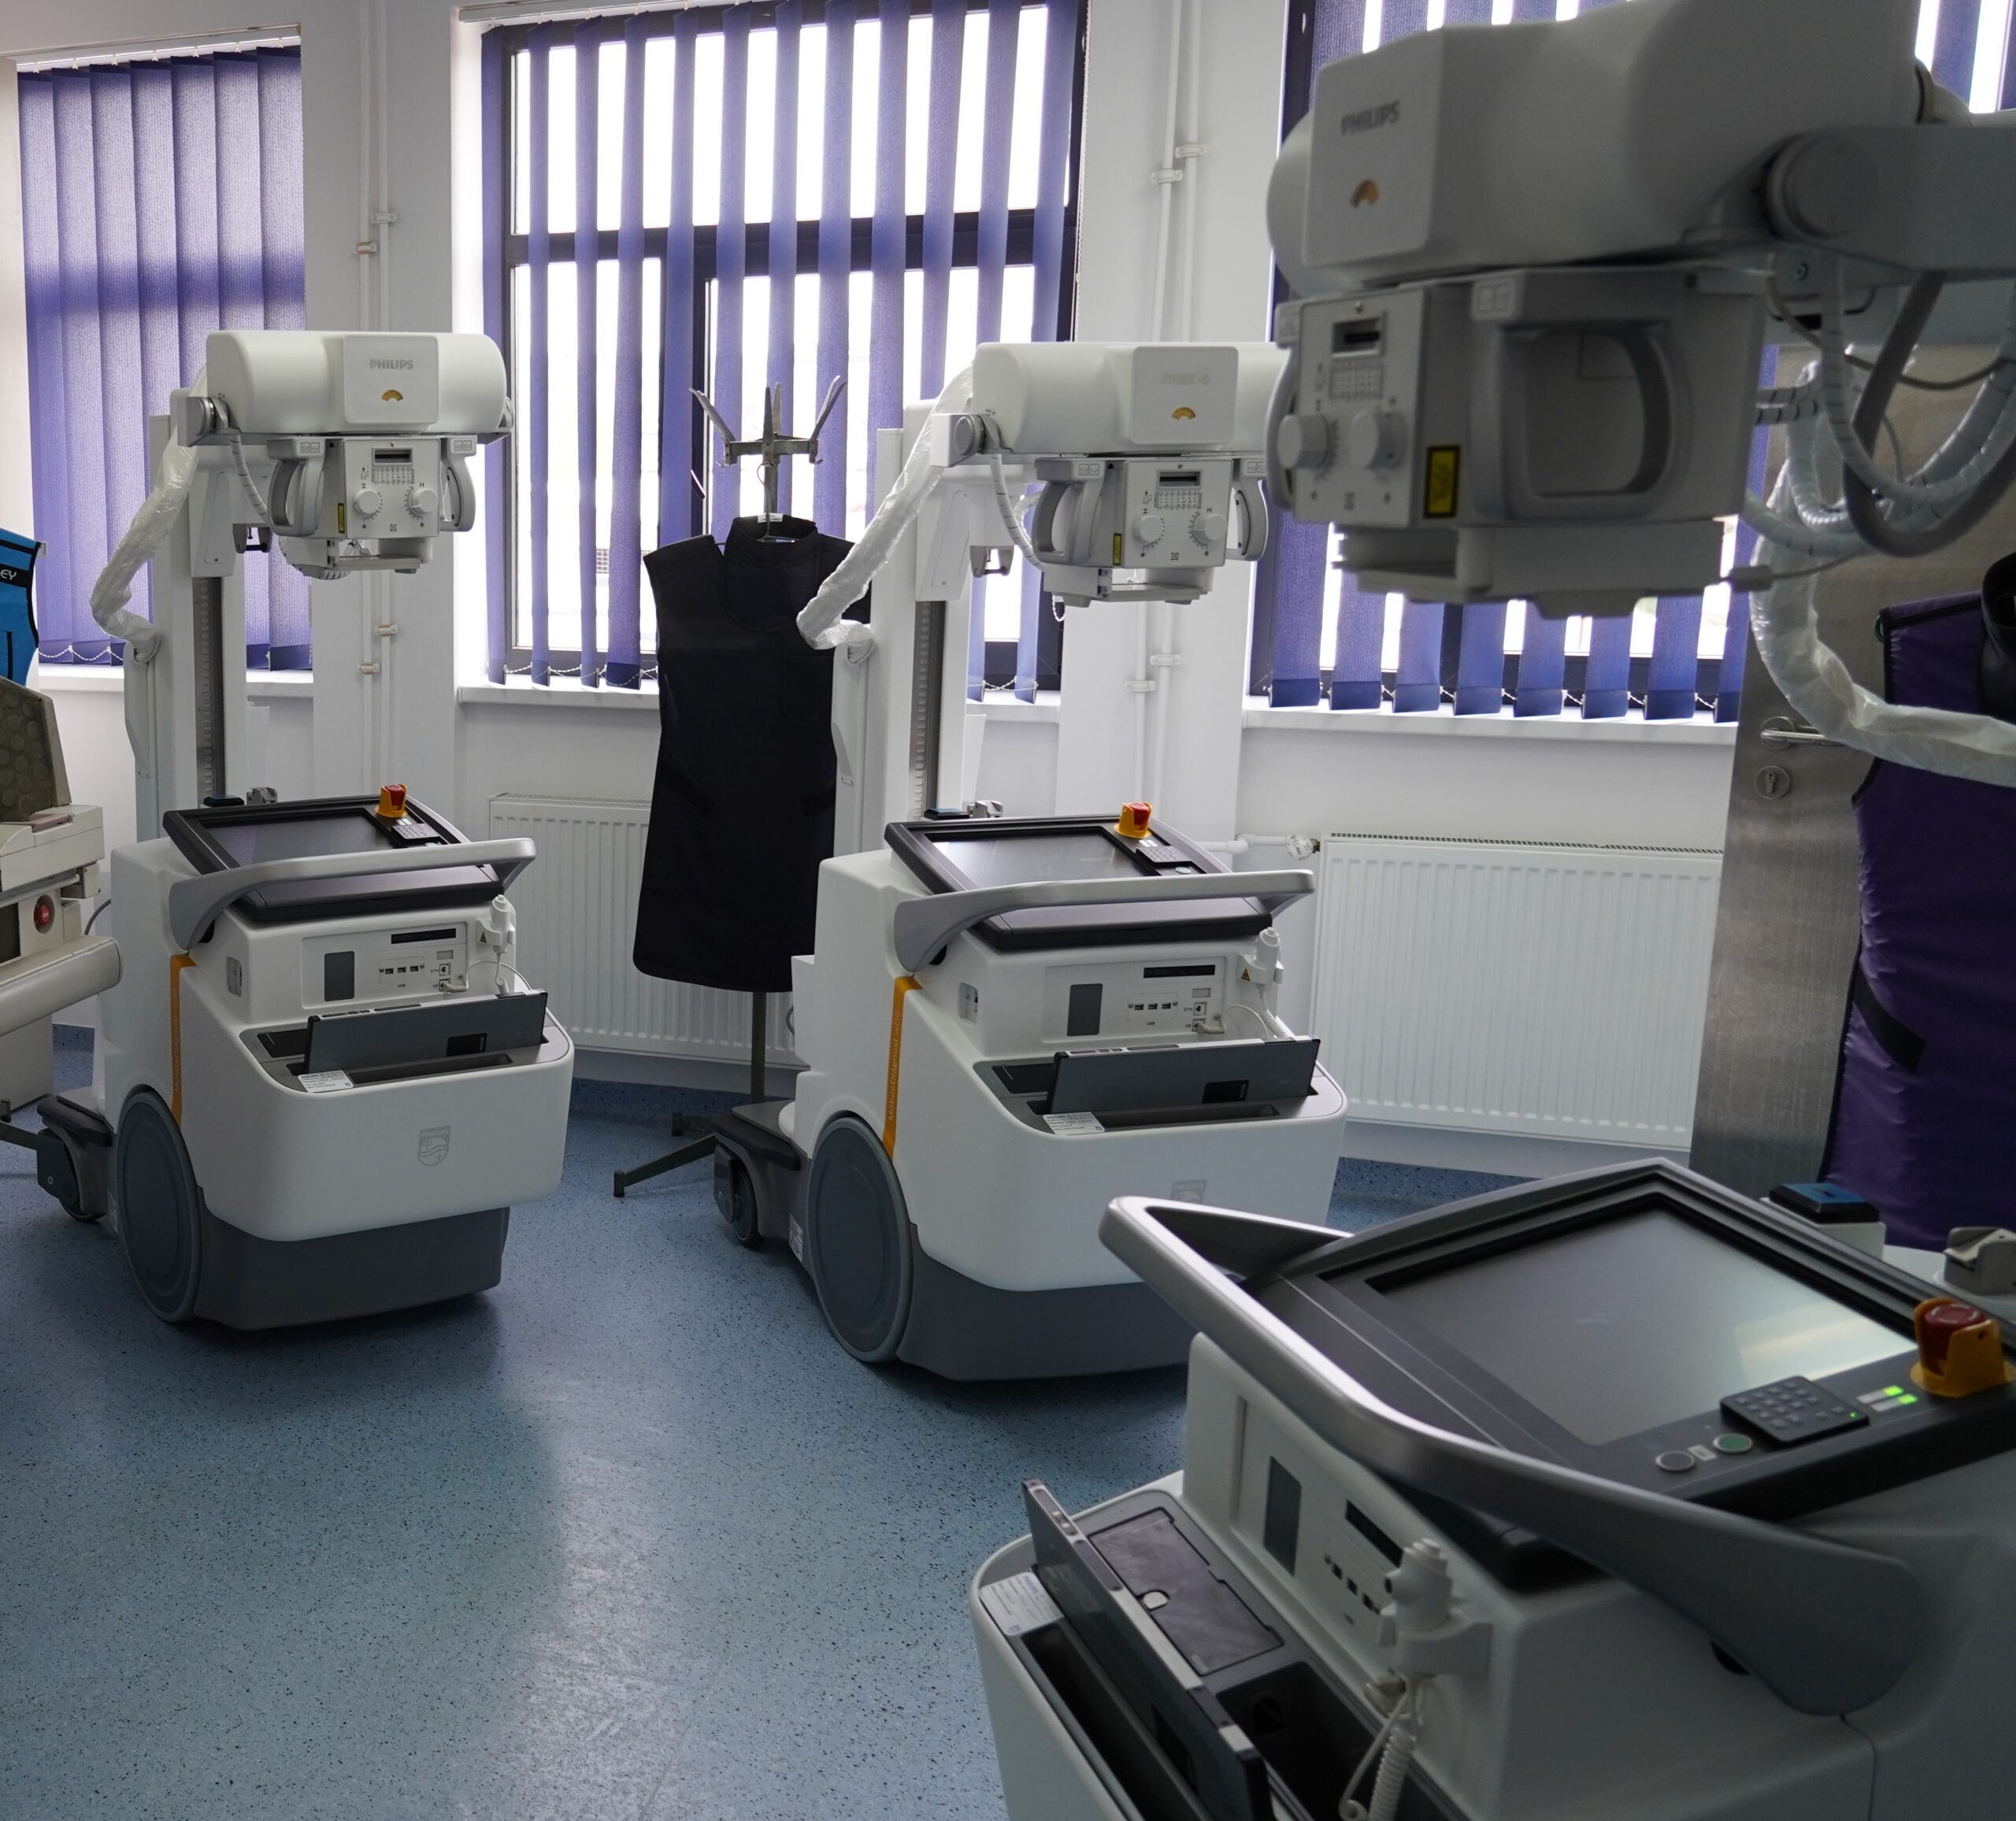 Dotări importante pentru Spitalul Județean de Urgență Târgoviște. Aparate mobile de radiologie și 700 de noptiere noi pentru saloanele unității spitalicești. VIDEO